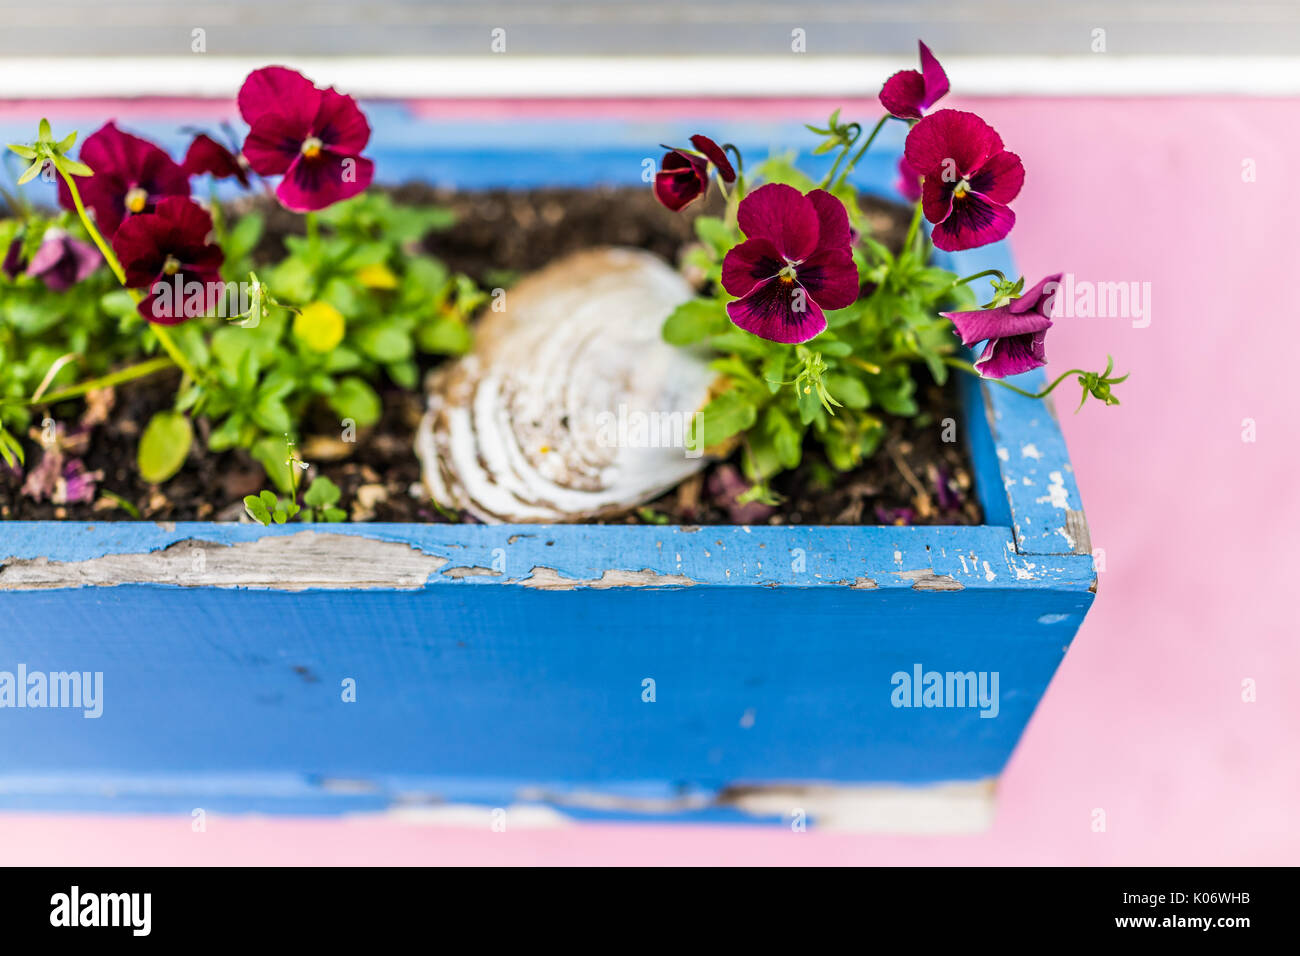 Bunte lila rot magenta Stiefmütterchen Blumen im Beet Kiste auf fensterbank von pink lackiert Haus Stockfoto